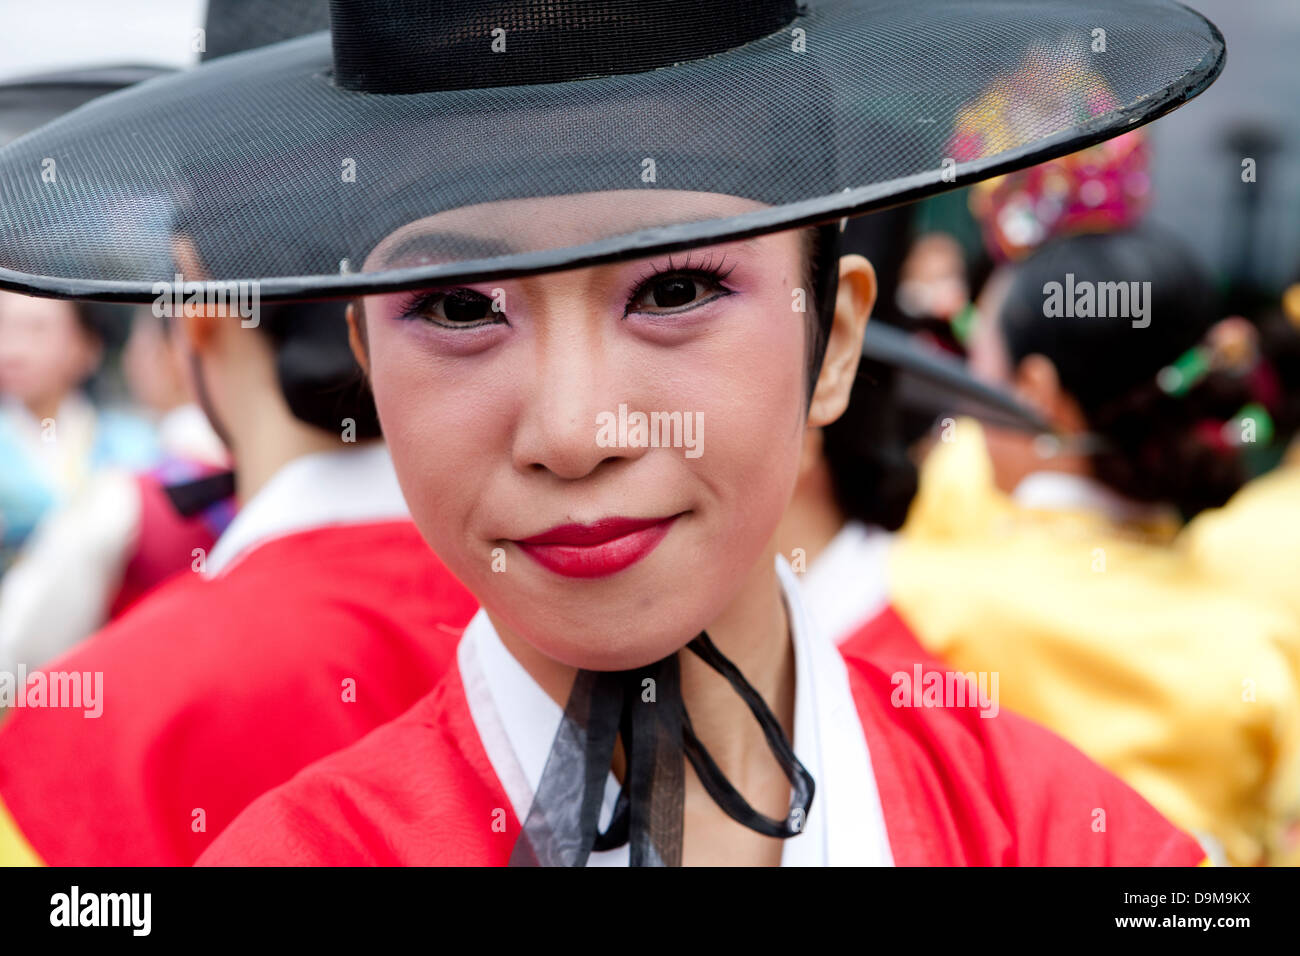 Thames Festival 2009. Des danseurs traditionnels coréens le mélange avec la foule de Londres. Banque D'Images